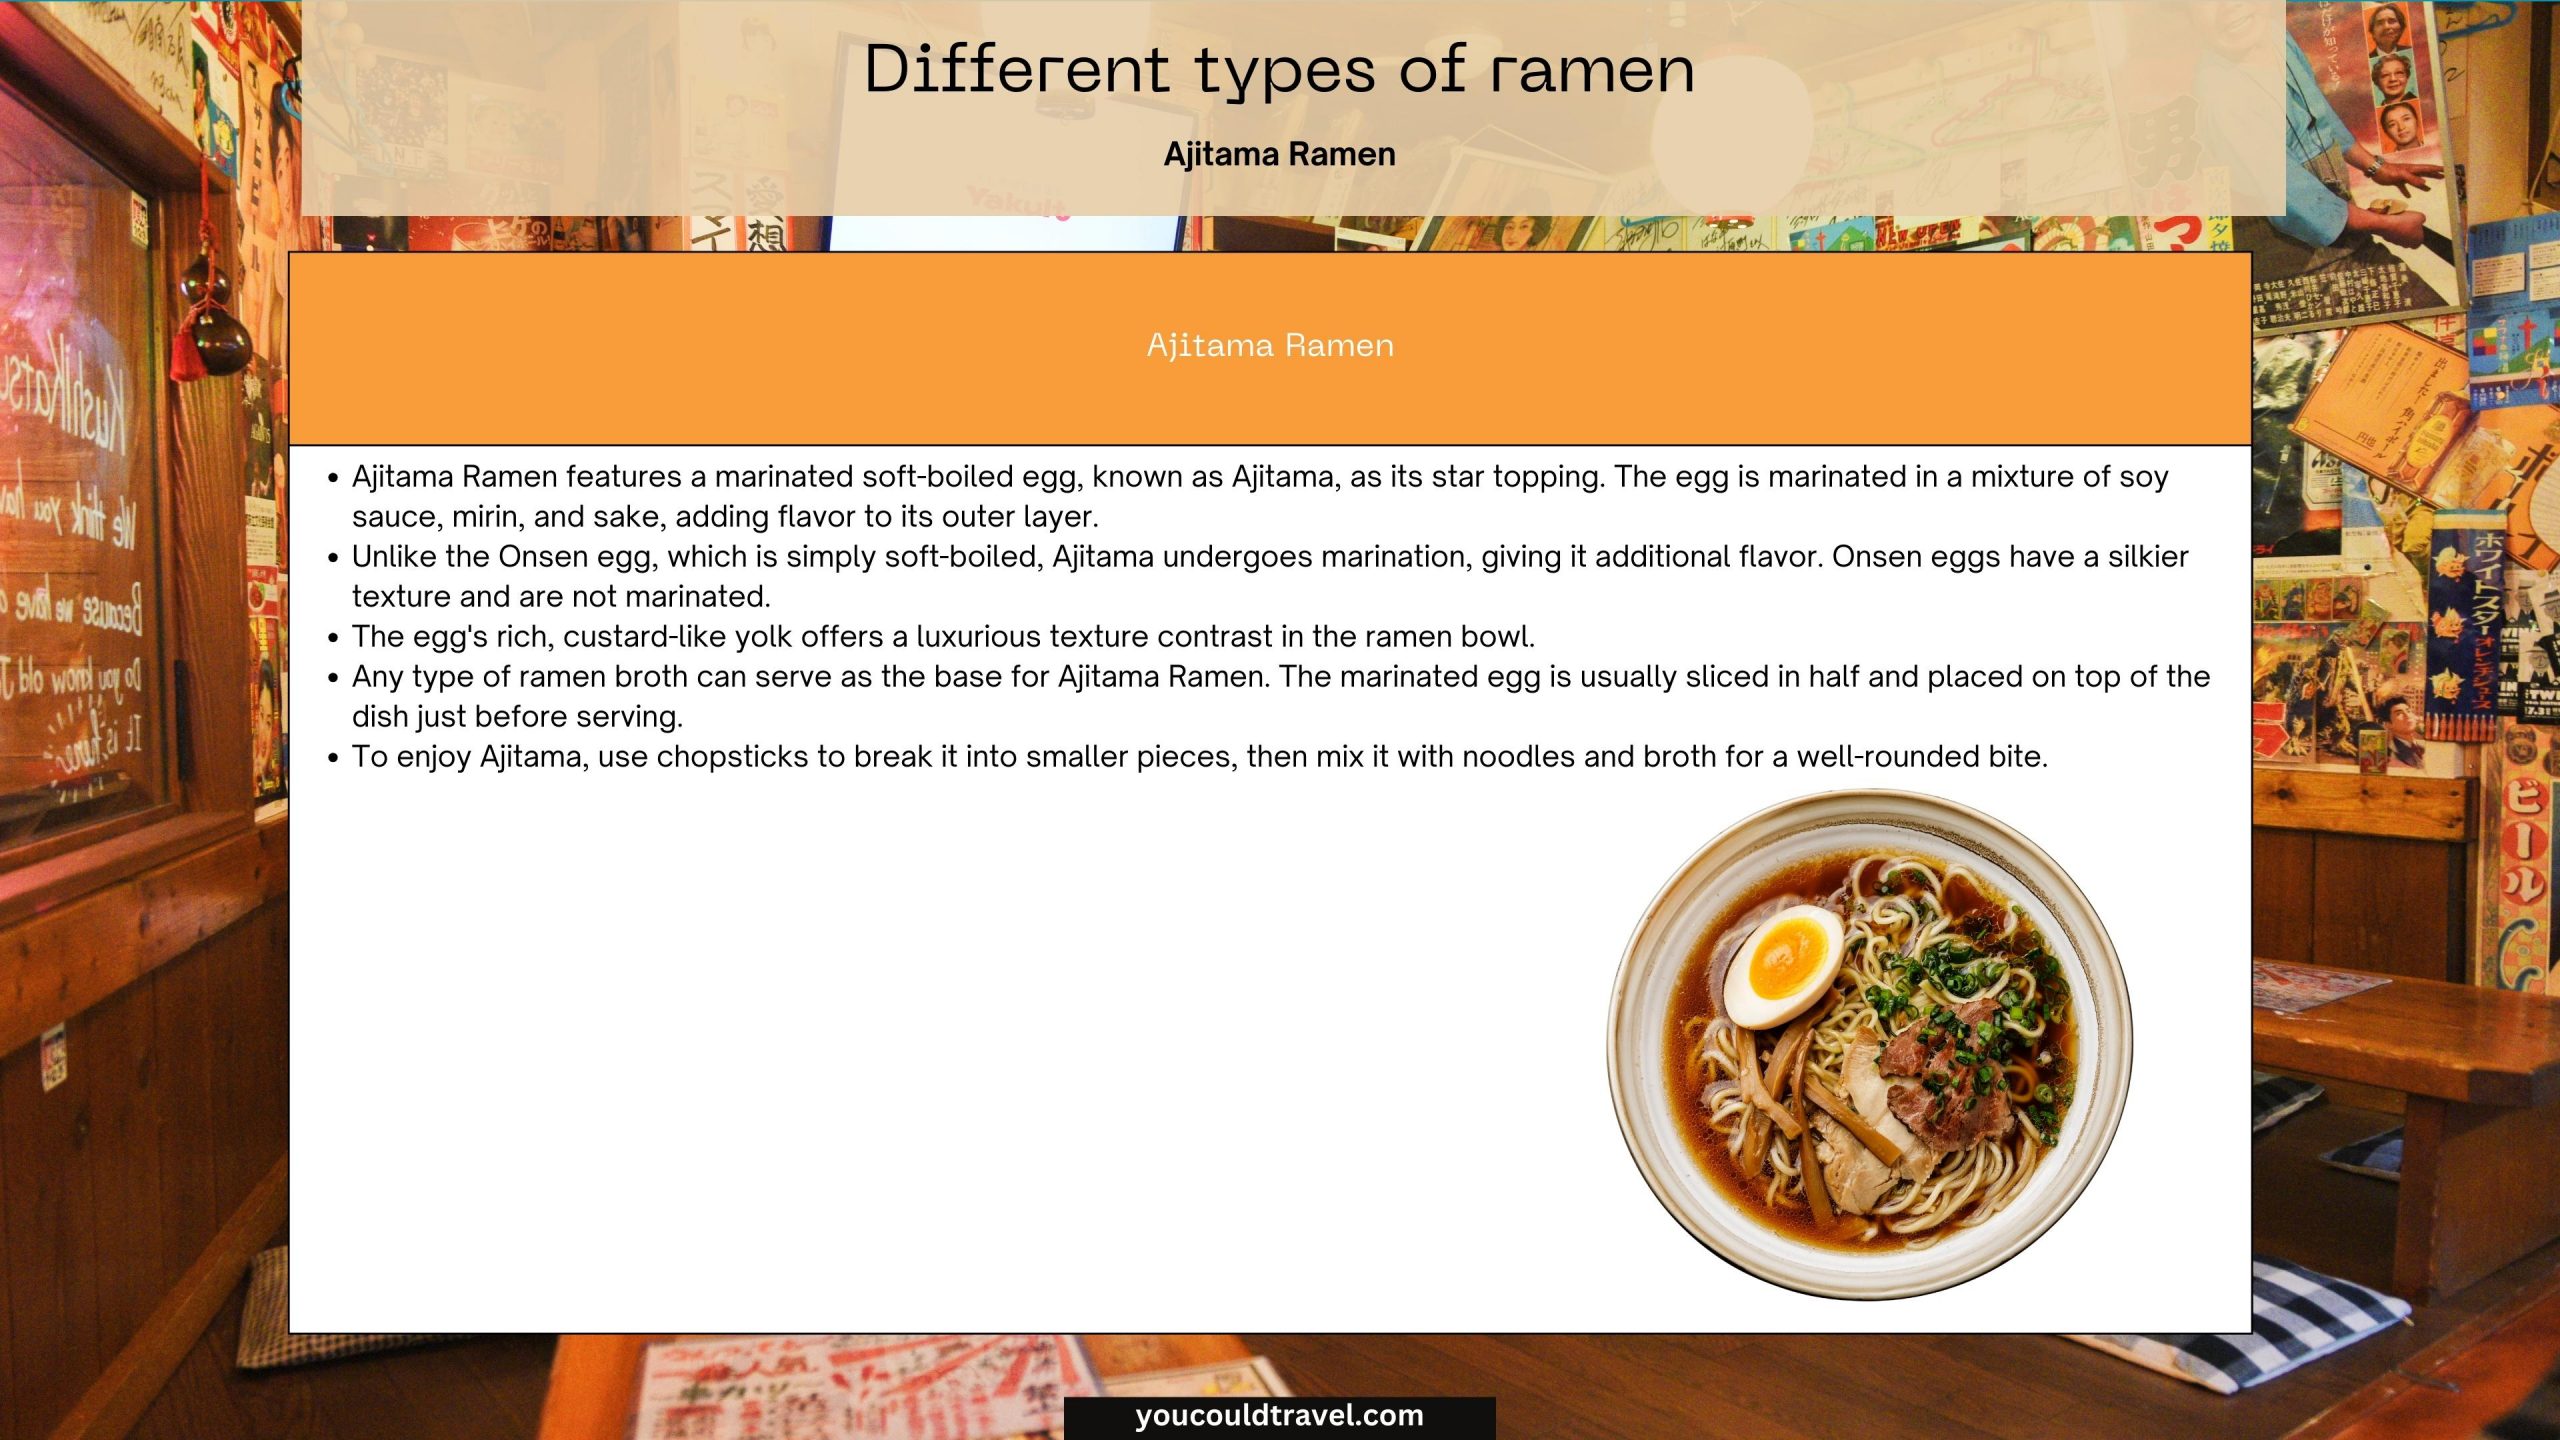 Ajitama ramen explanation and photo example